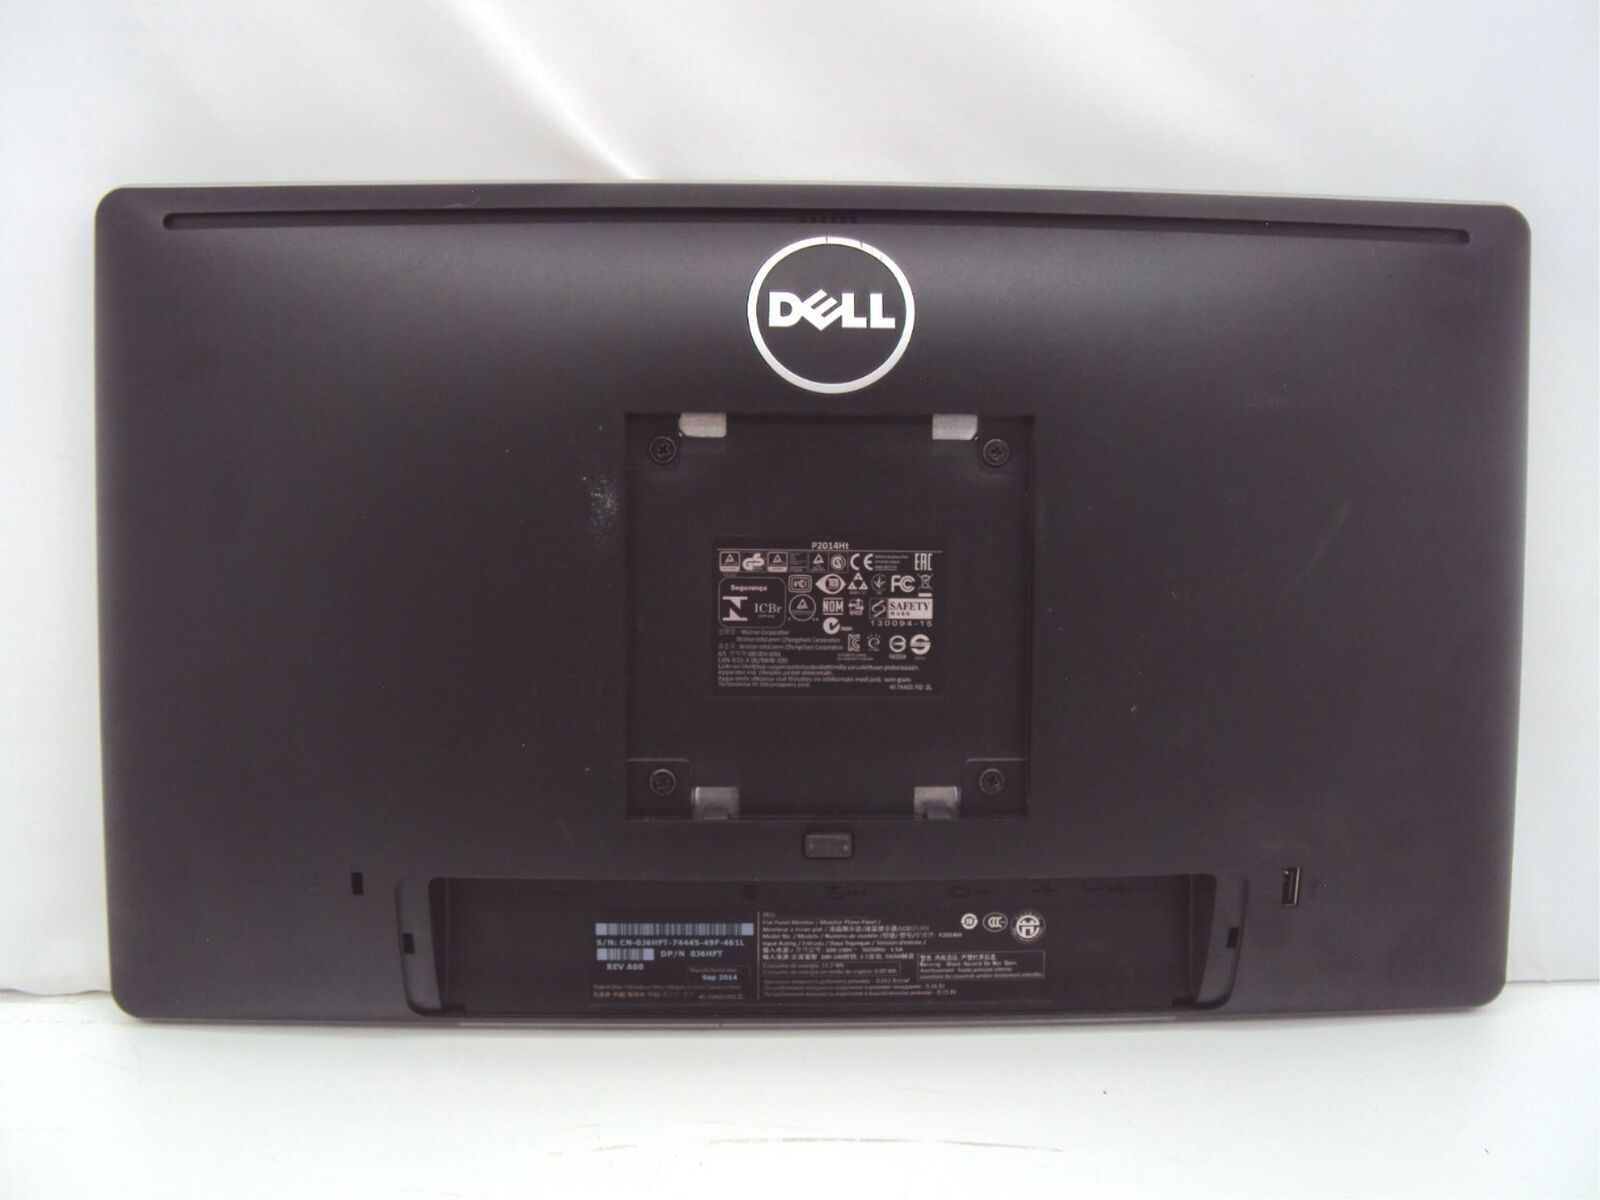 Lot of 2 Dell P2014Ht 20" Dual Desktop Computer Monitor VGA DVI USB No Stand Dell Dell P2014Ht - фотография #2